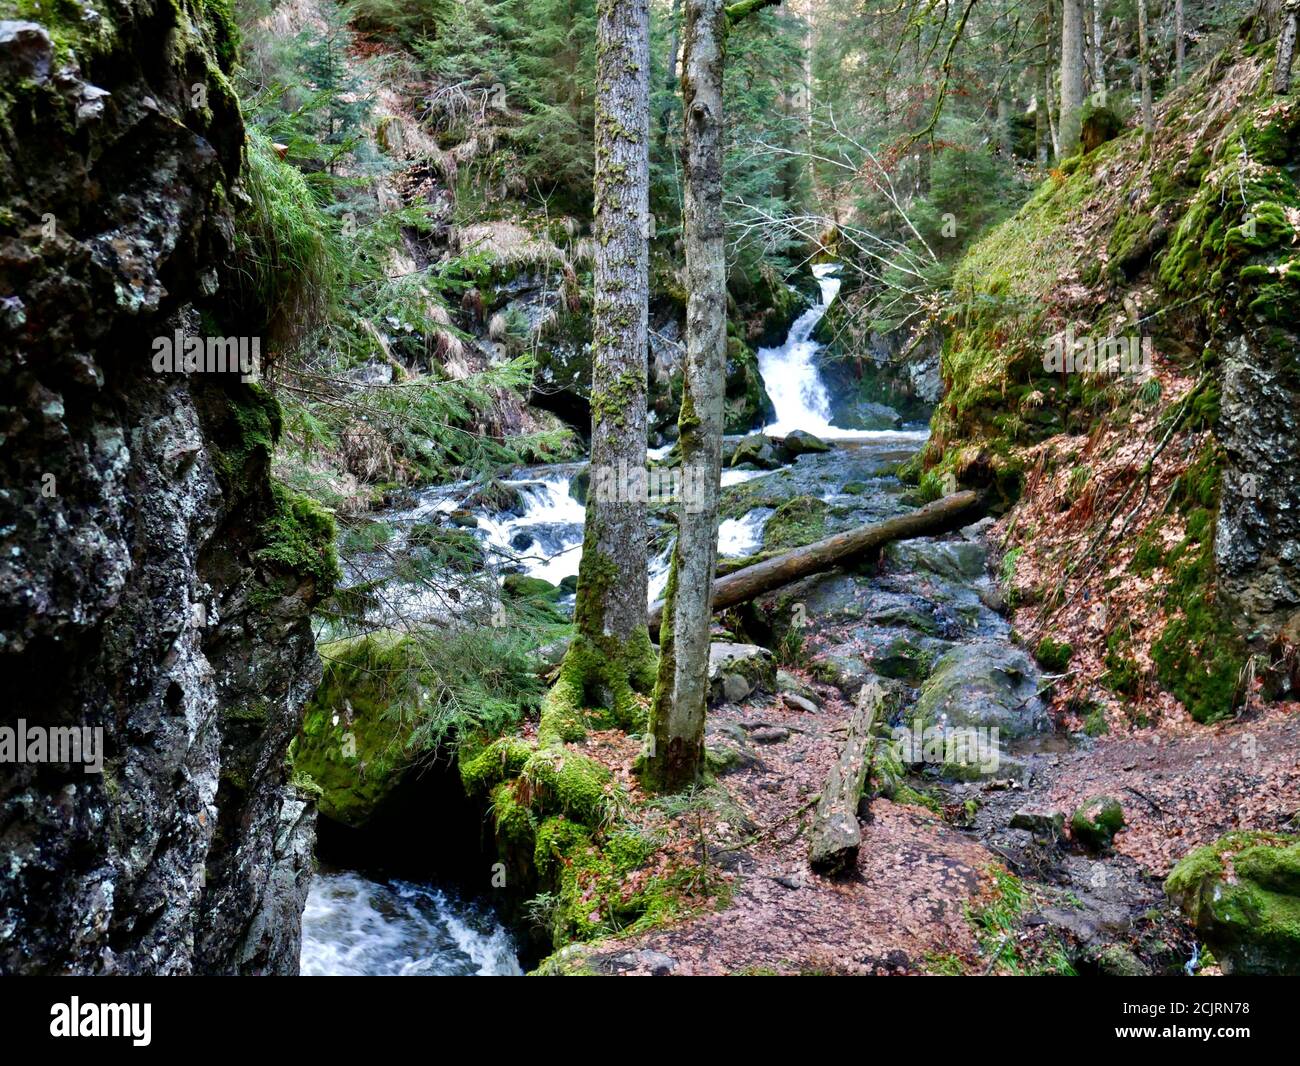 Kleine Insel in einem Flussbett im Schwarzwald. Typischer Waldweg an einem Fluss mit Bäumen und Steinen. Stock Photo